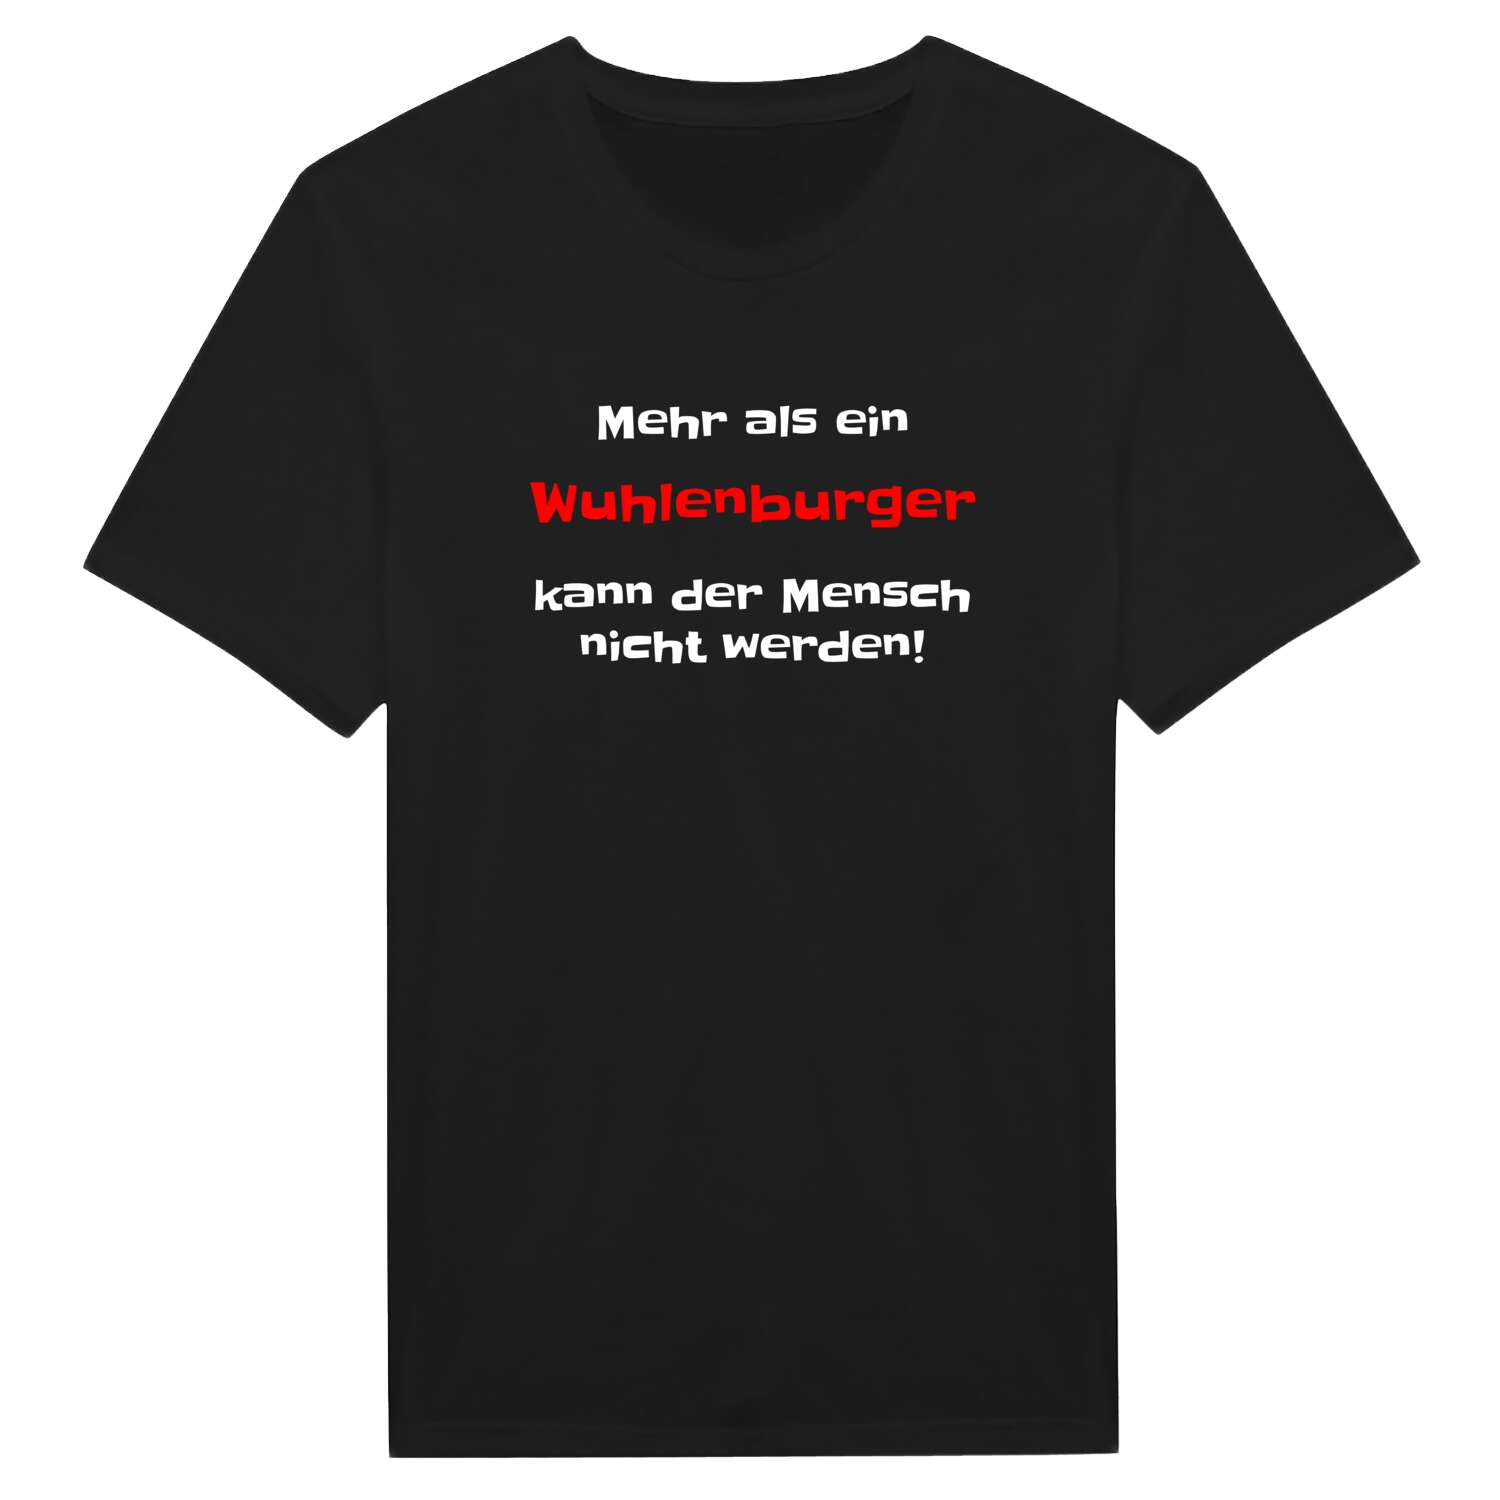 Wuhlenburg T-Shirt »Mehr als ein«